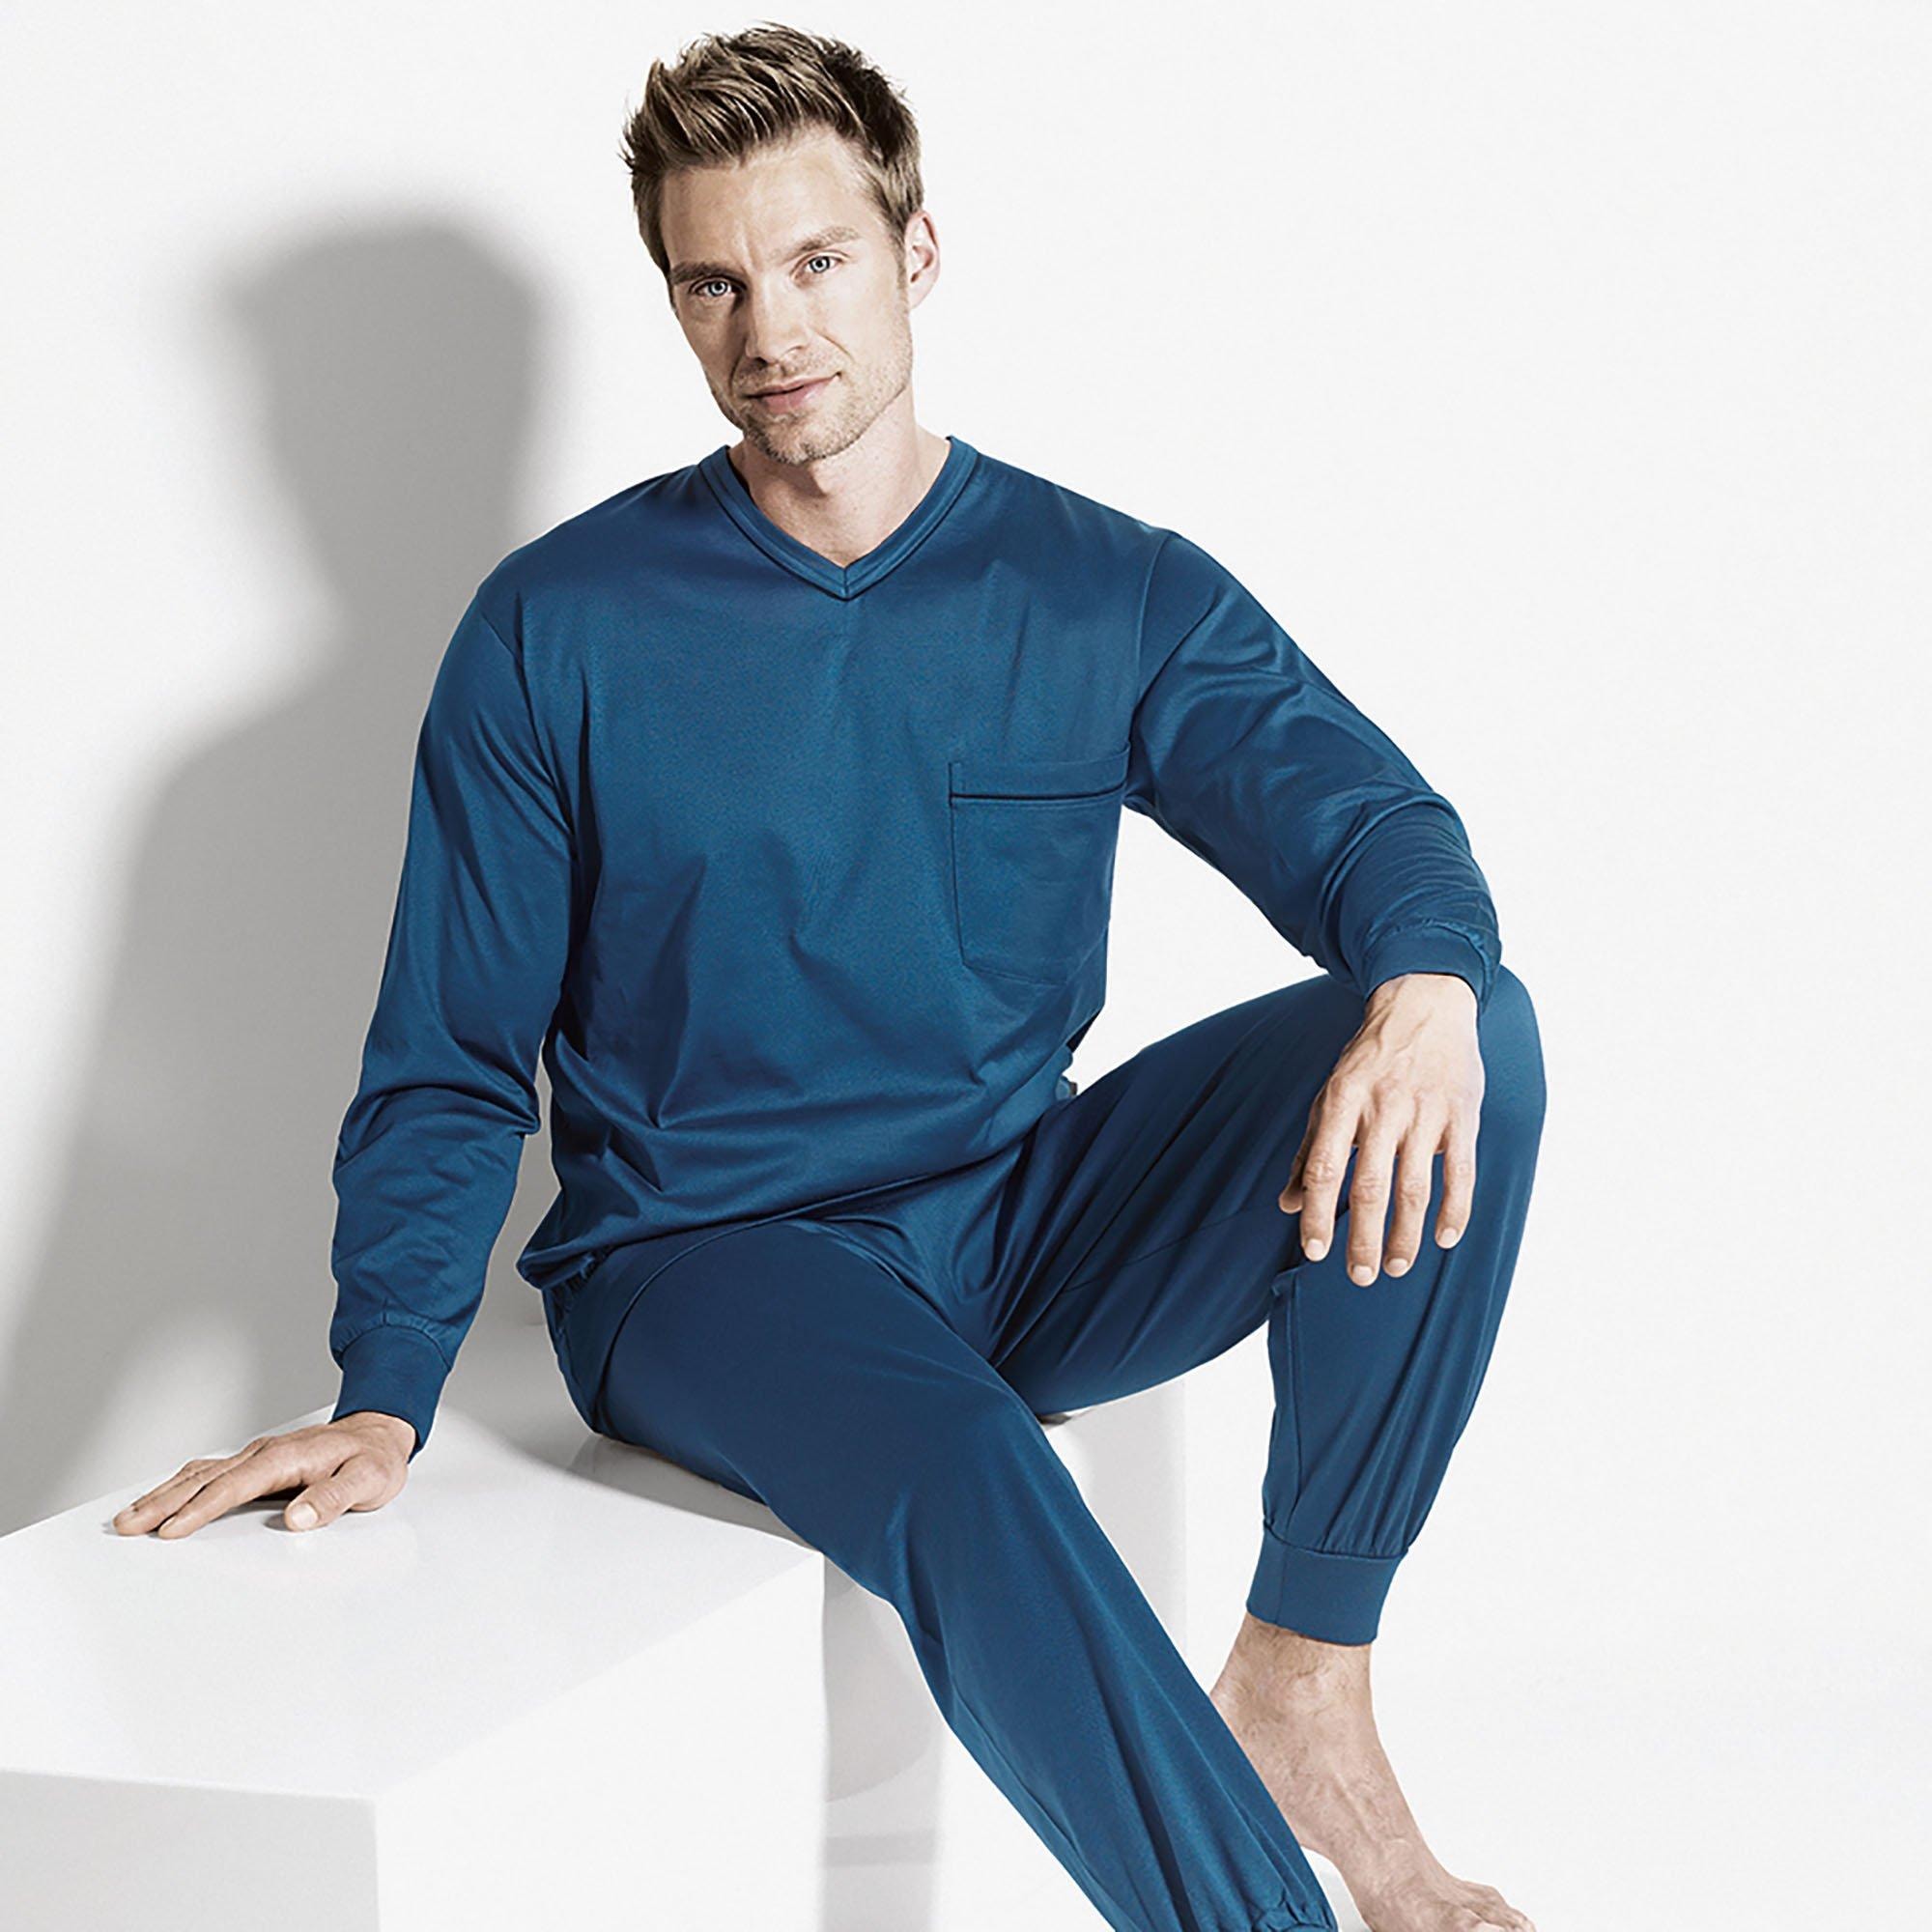 ISA Bodywear Pyjama »506, lang VN«